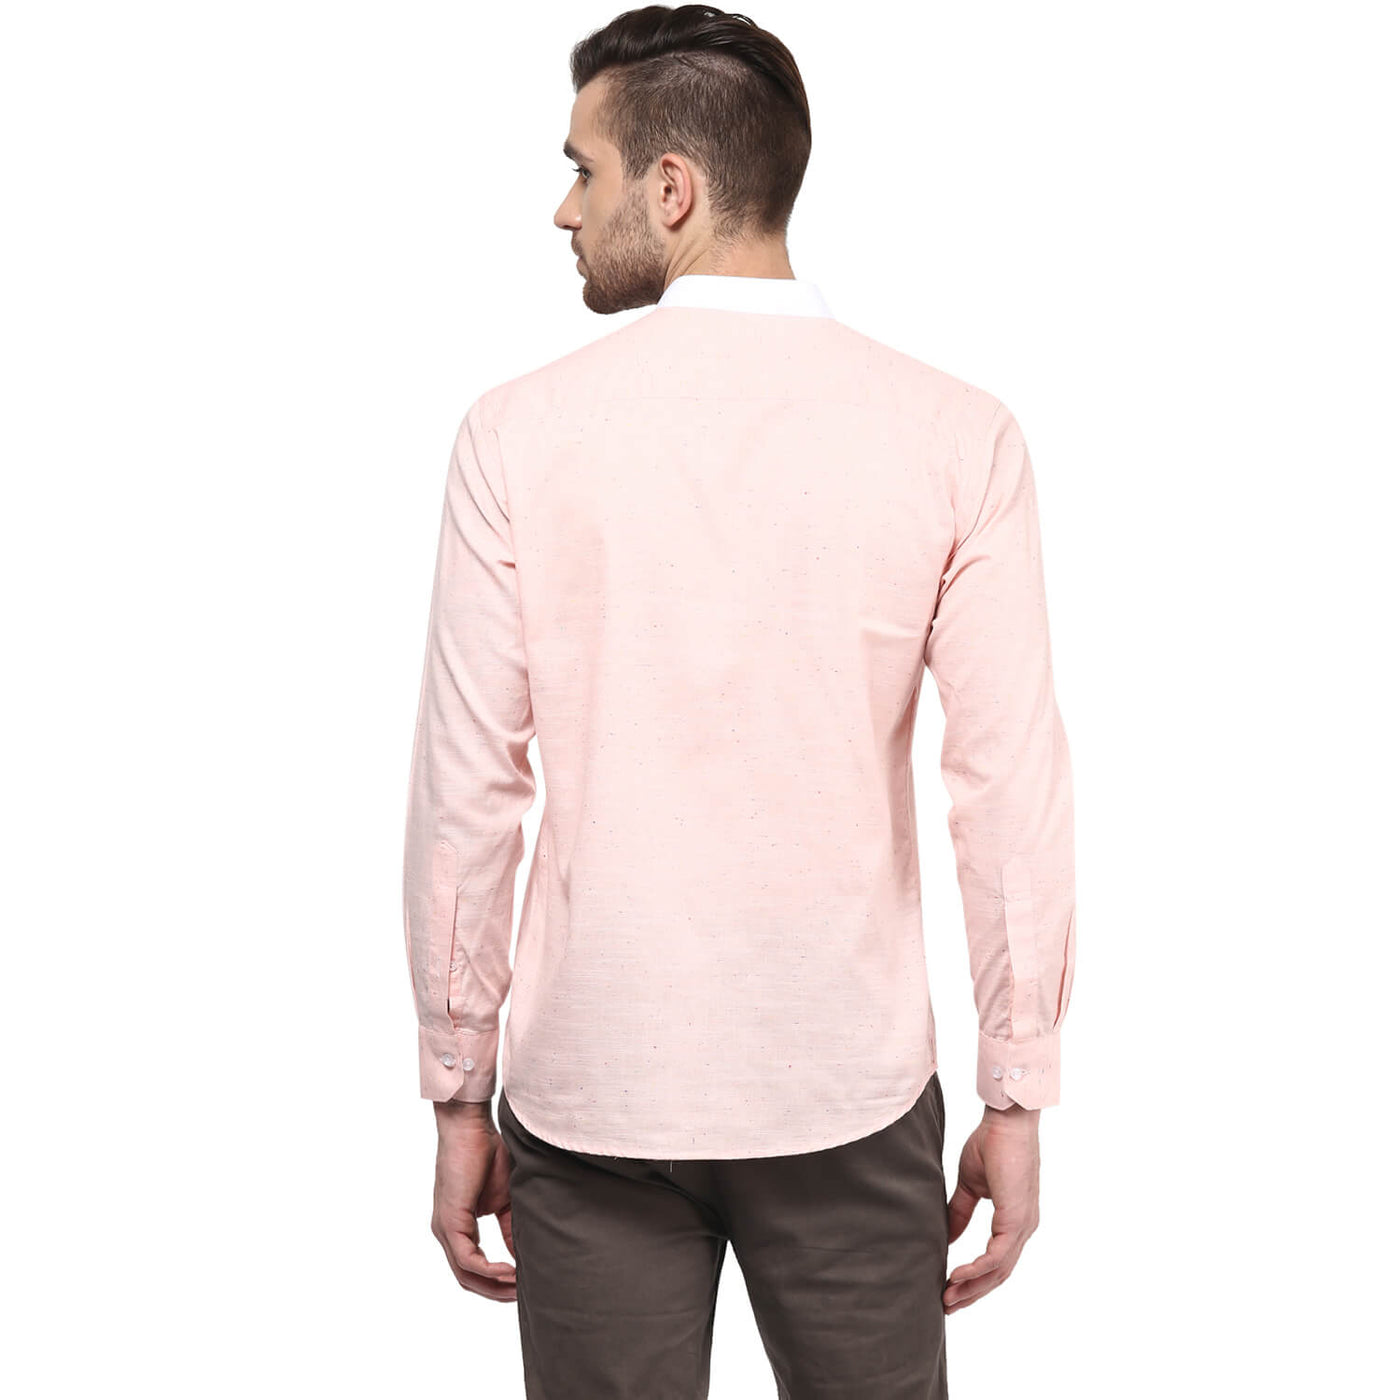 Premium 100% Cotton Shirt Coral Color